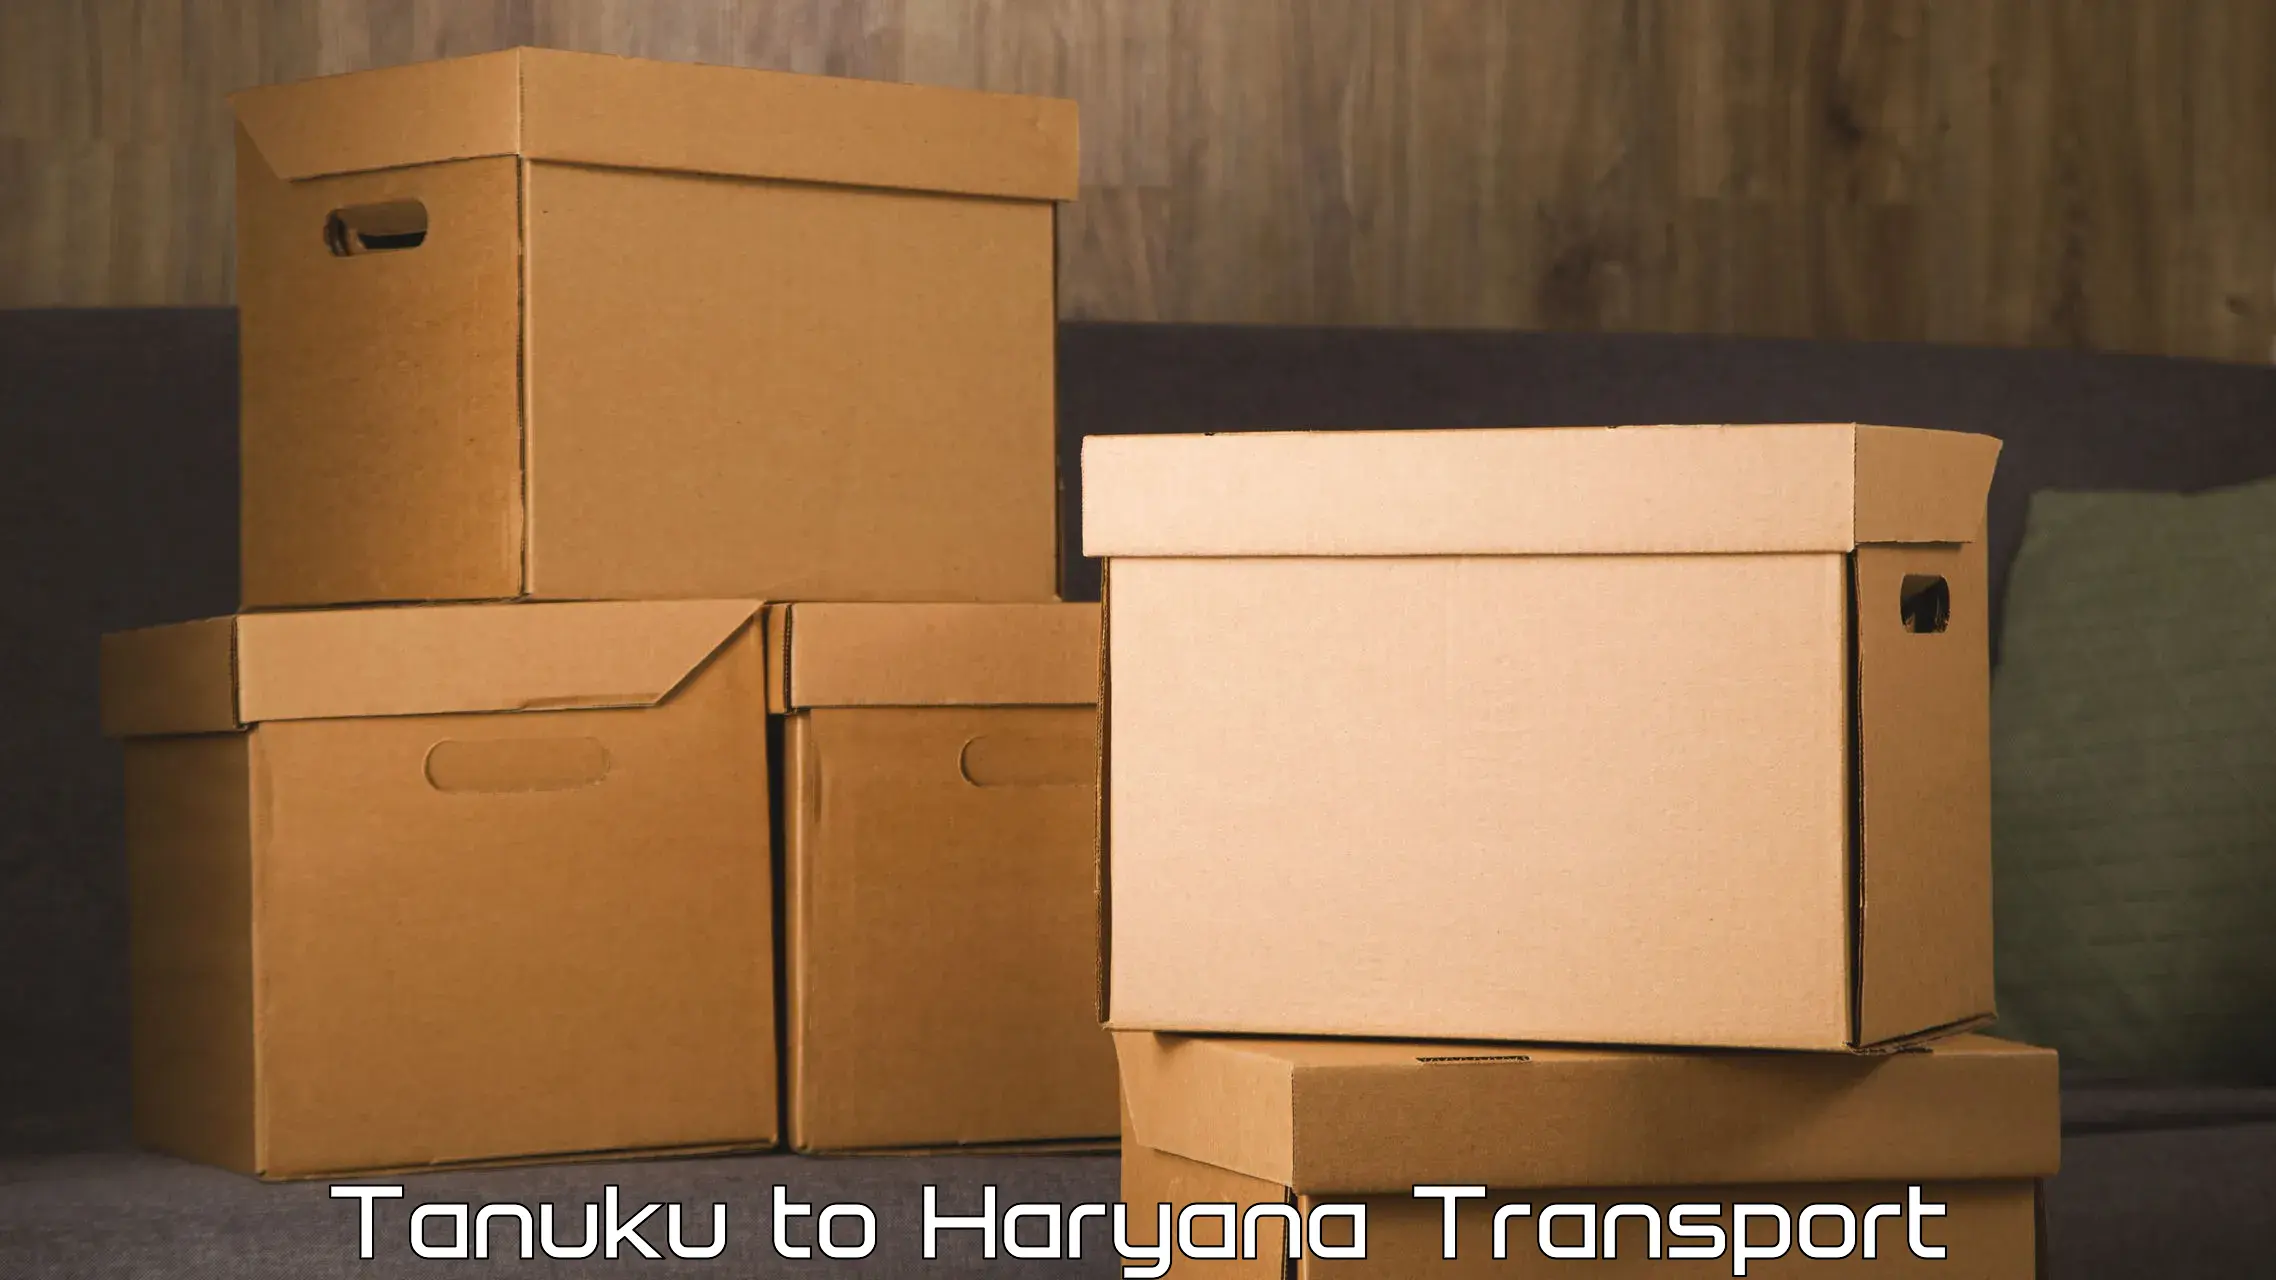 Vehicle parcel service Tanuku to Haryana